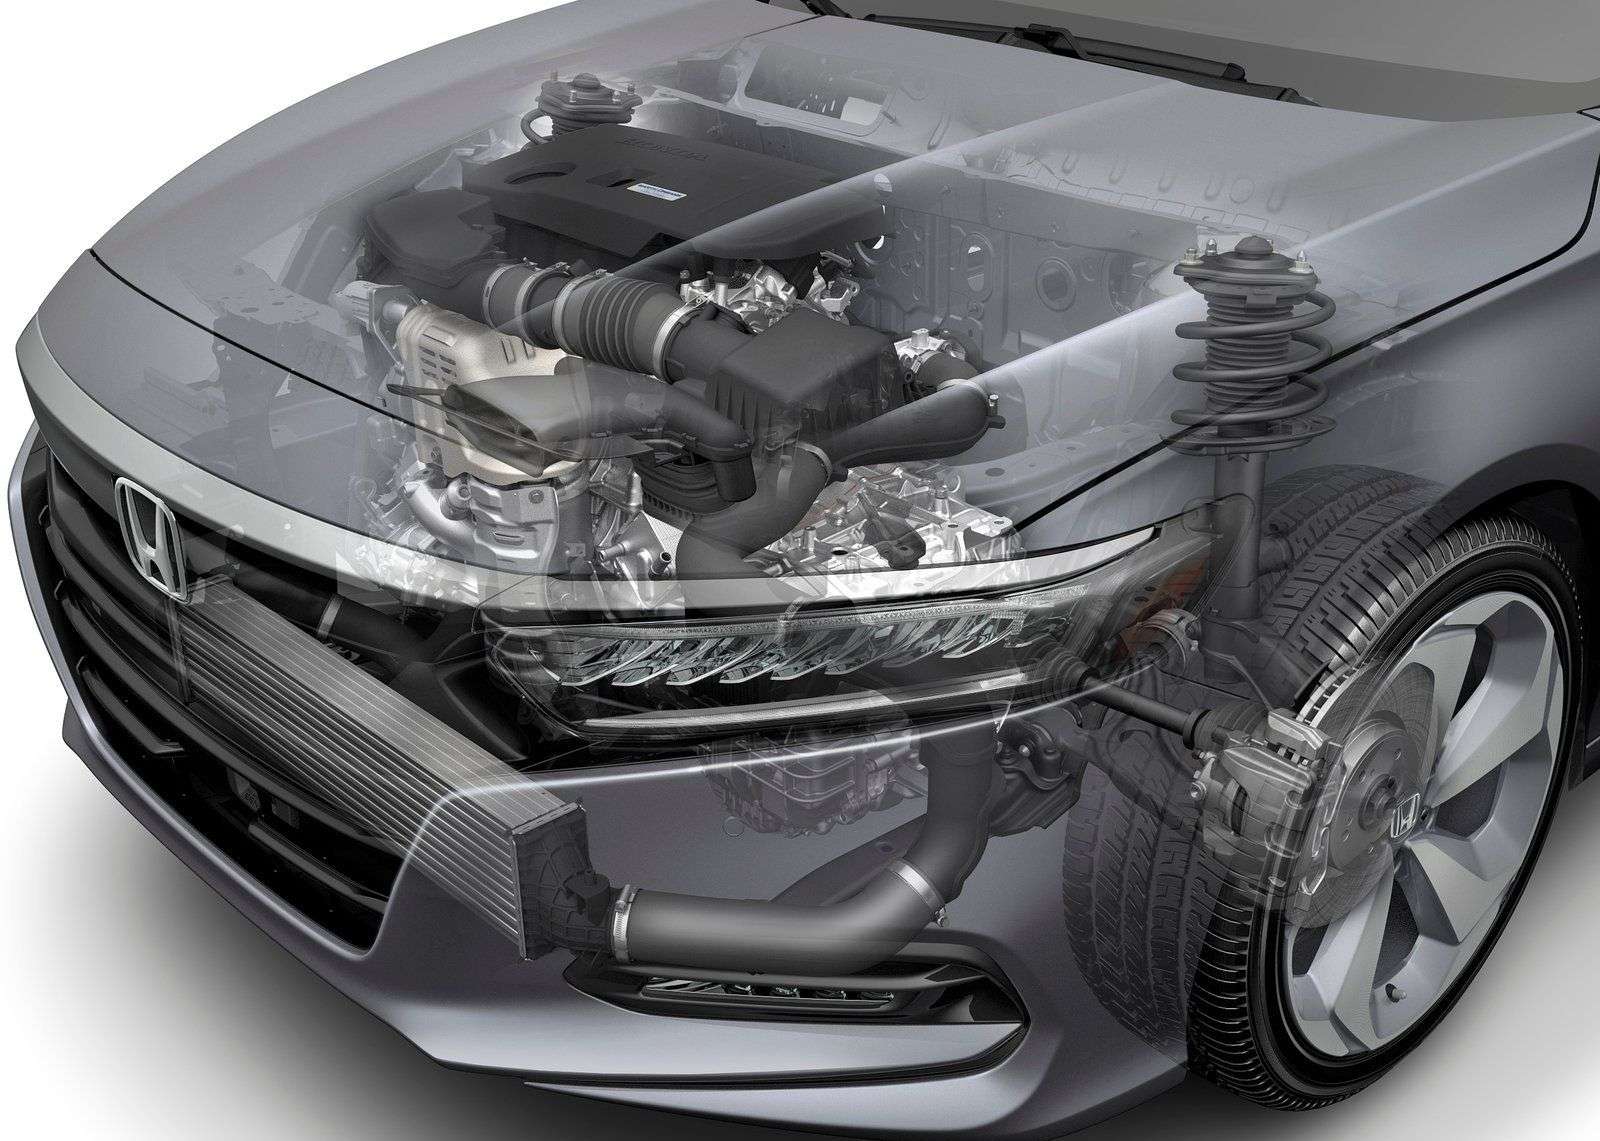 Обзор седана Honda Accord 2018: технические характеристики, комплектации, цена